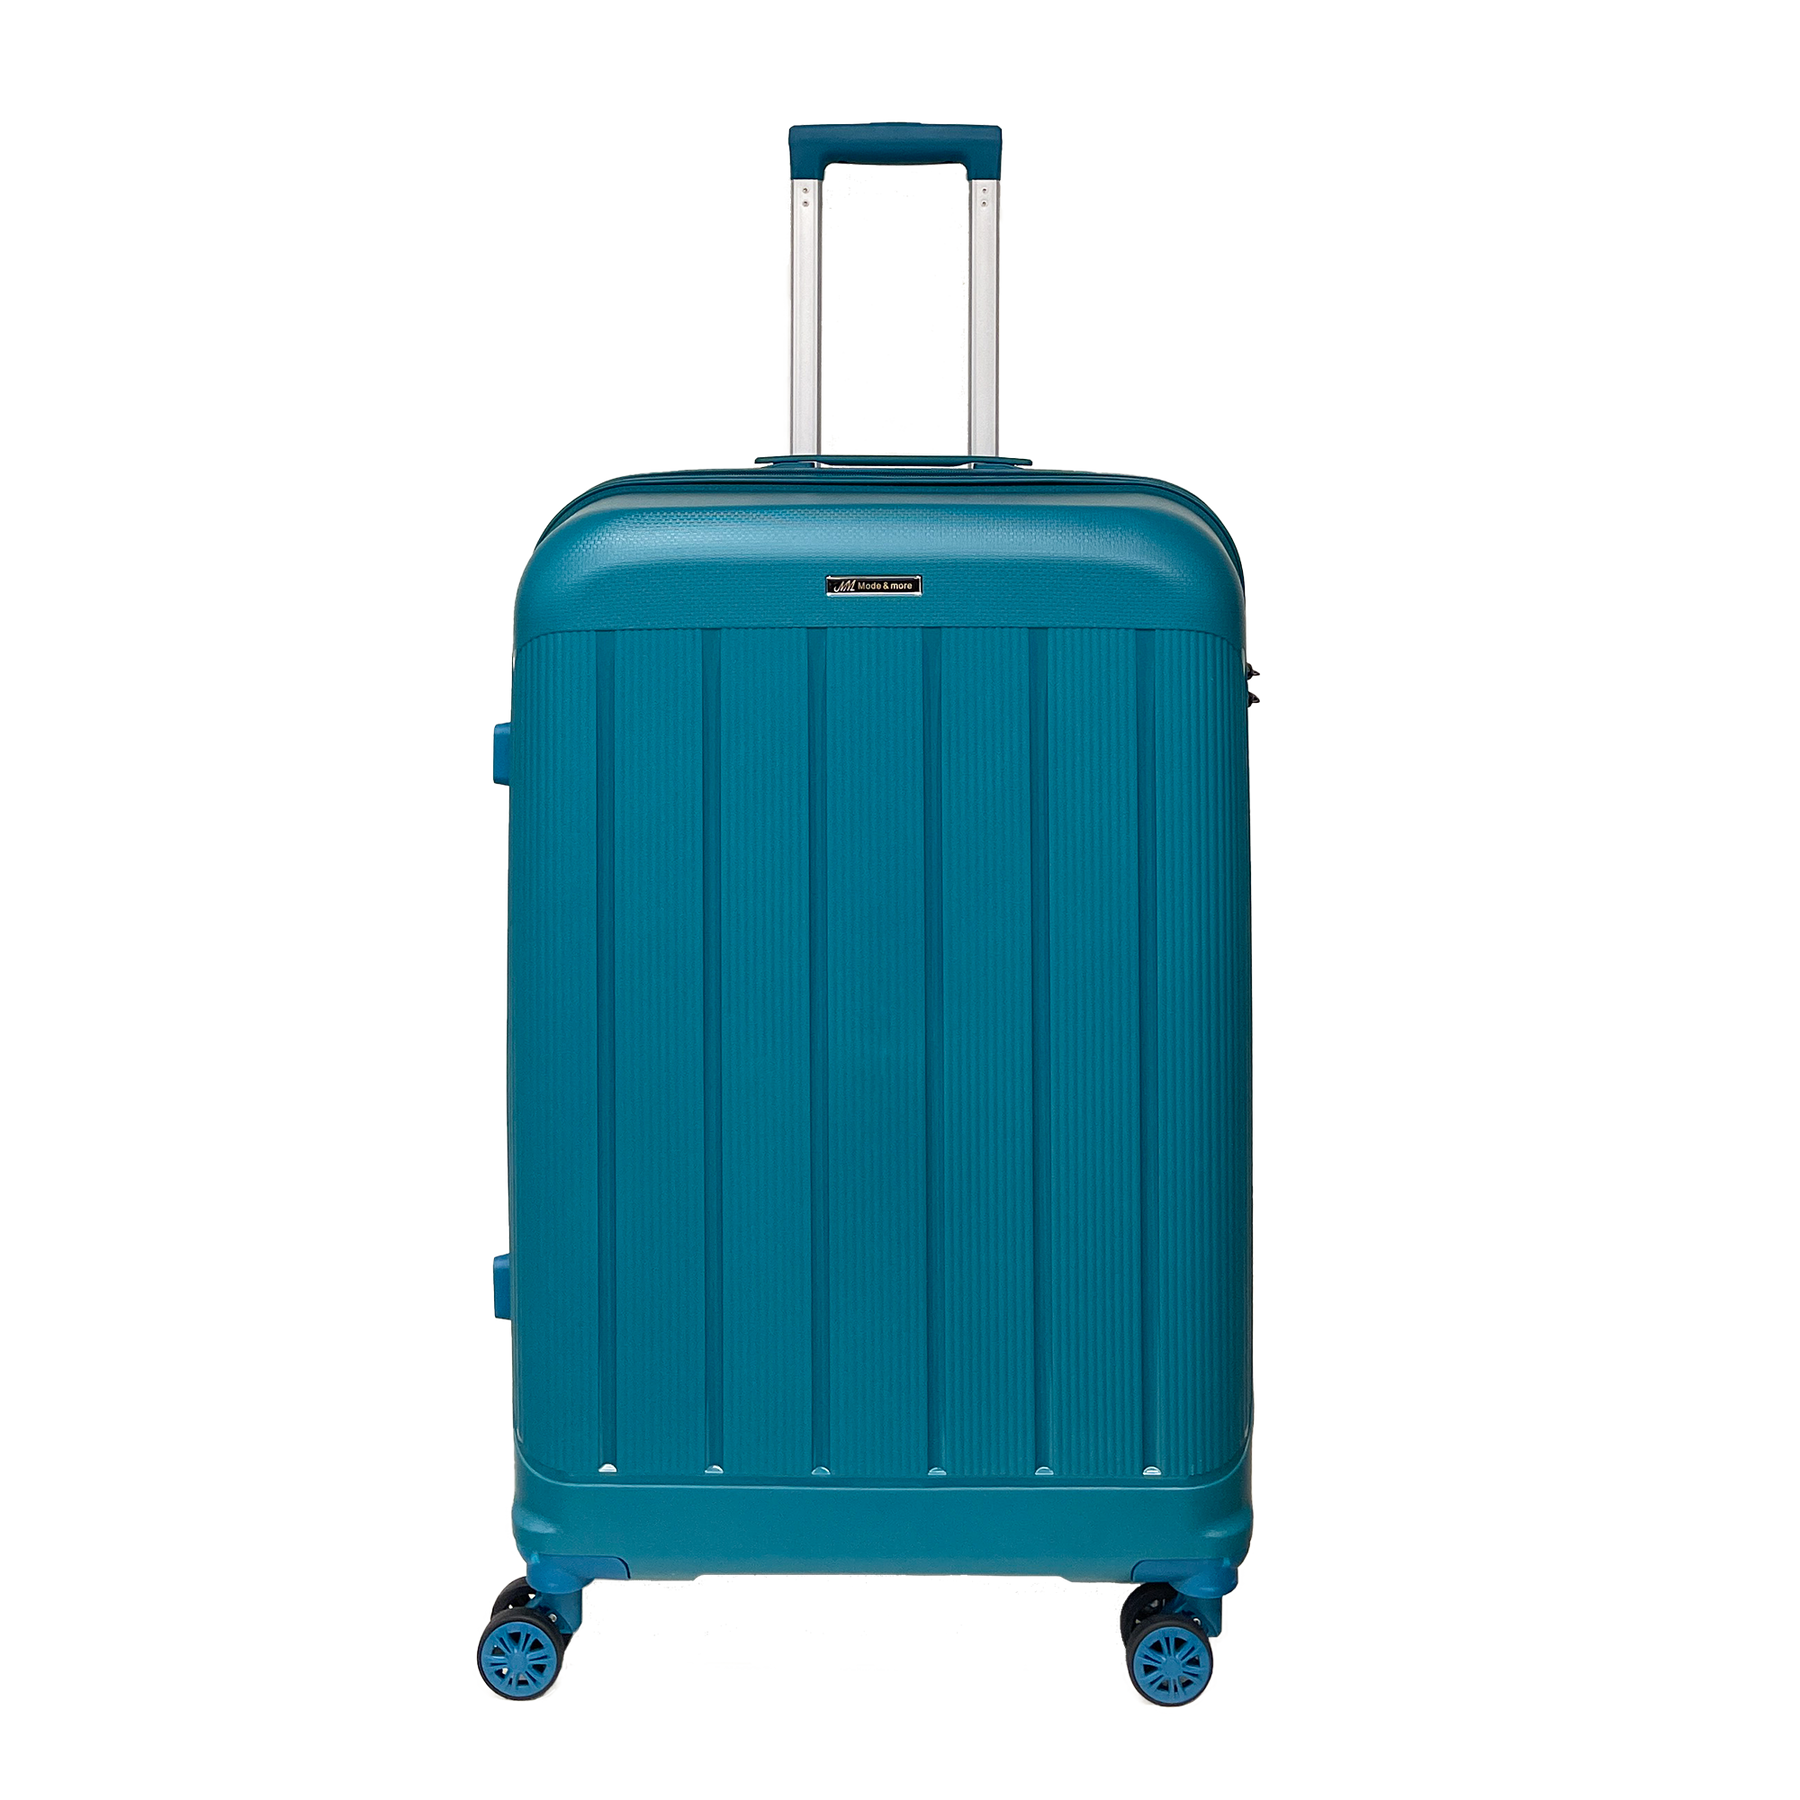 Velký měkký polypropylenový kufr Světlo 74x50x30cm s zámkem TSA